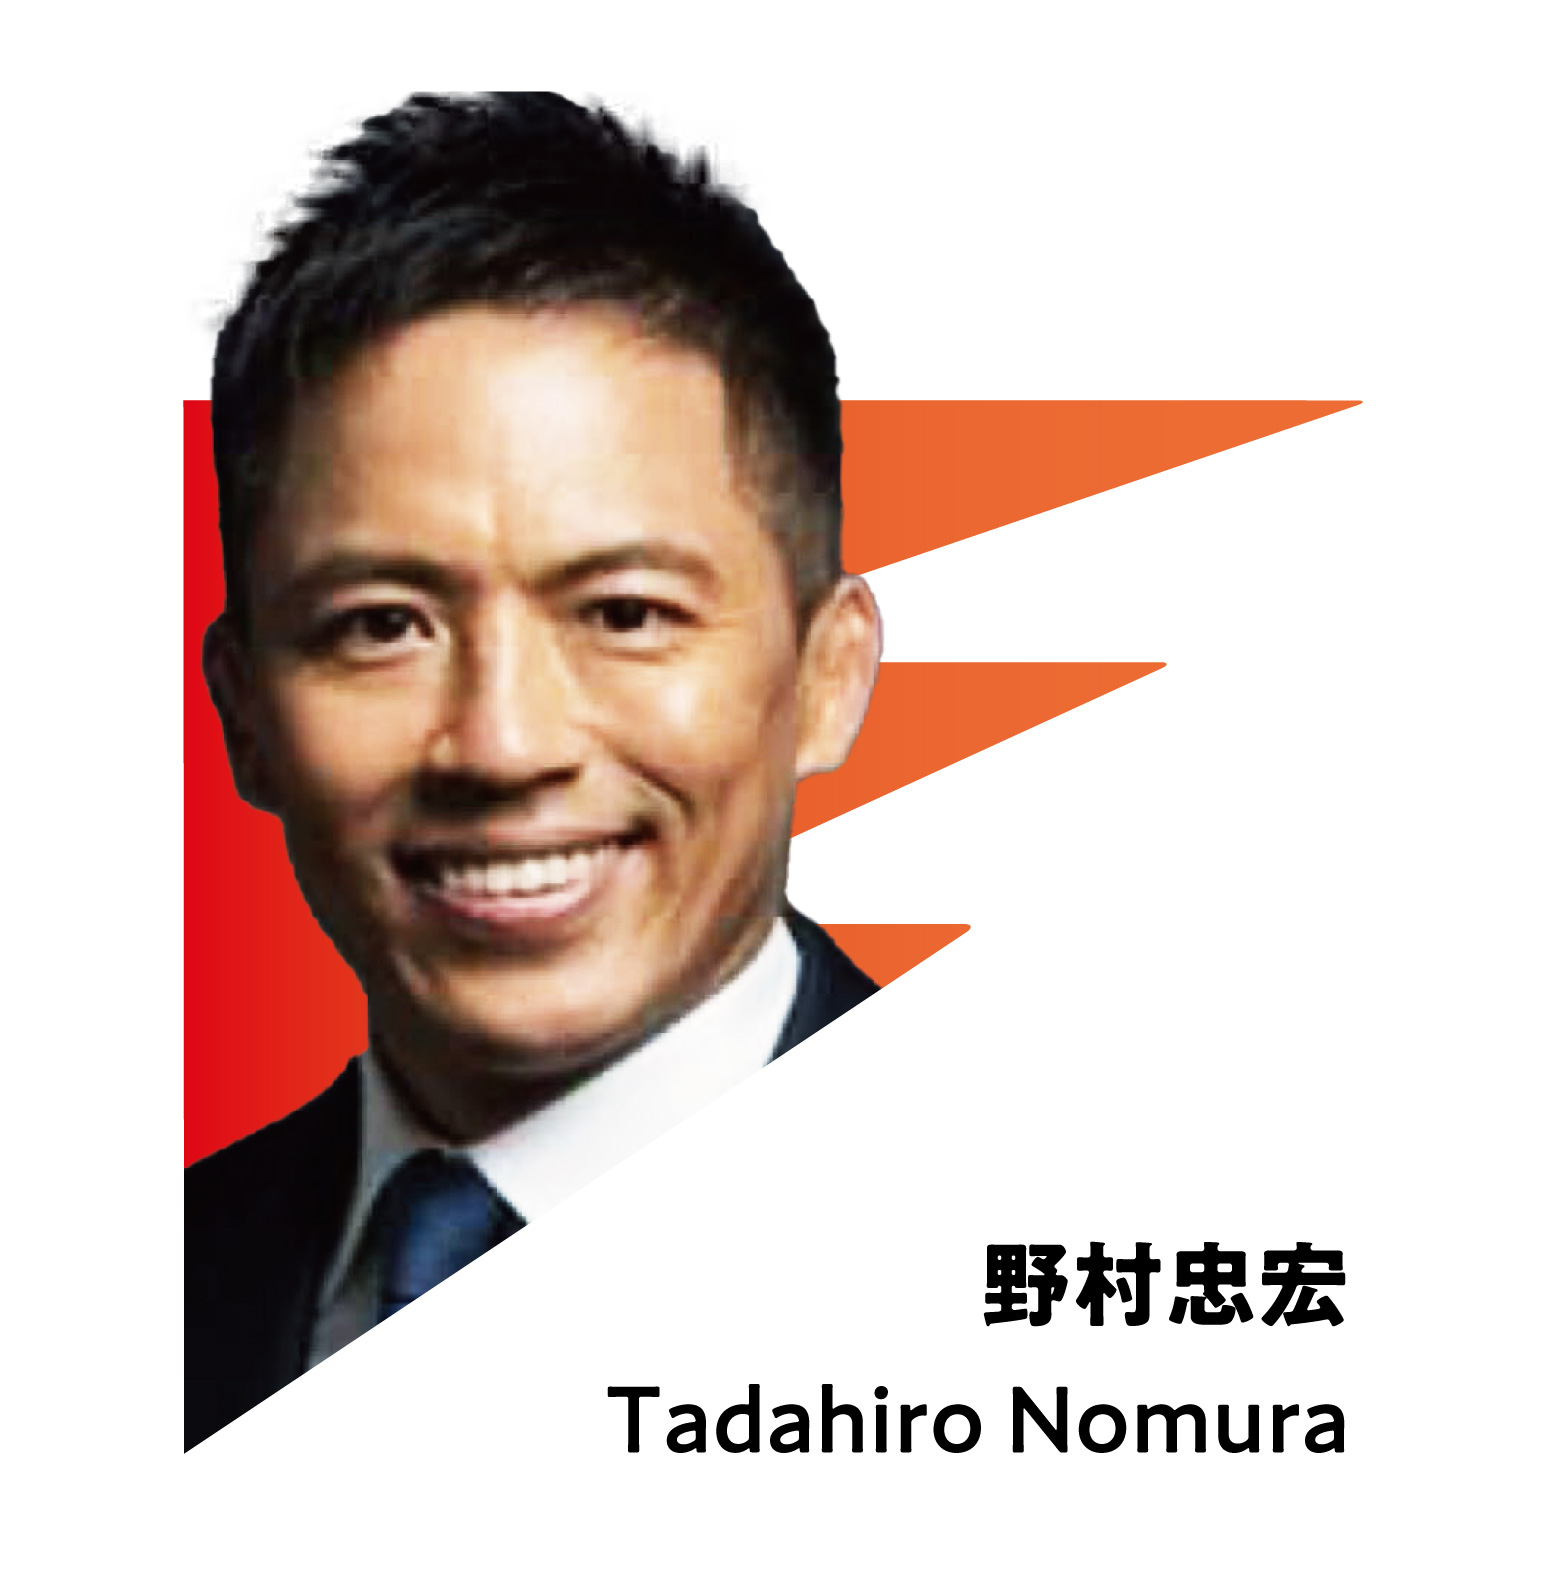 TADAHIRO NOMURA